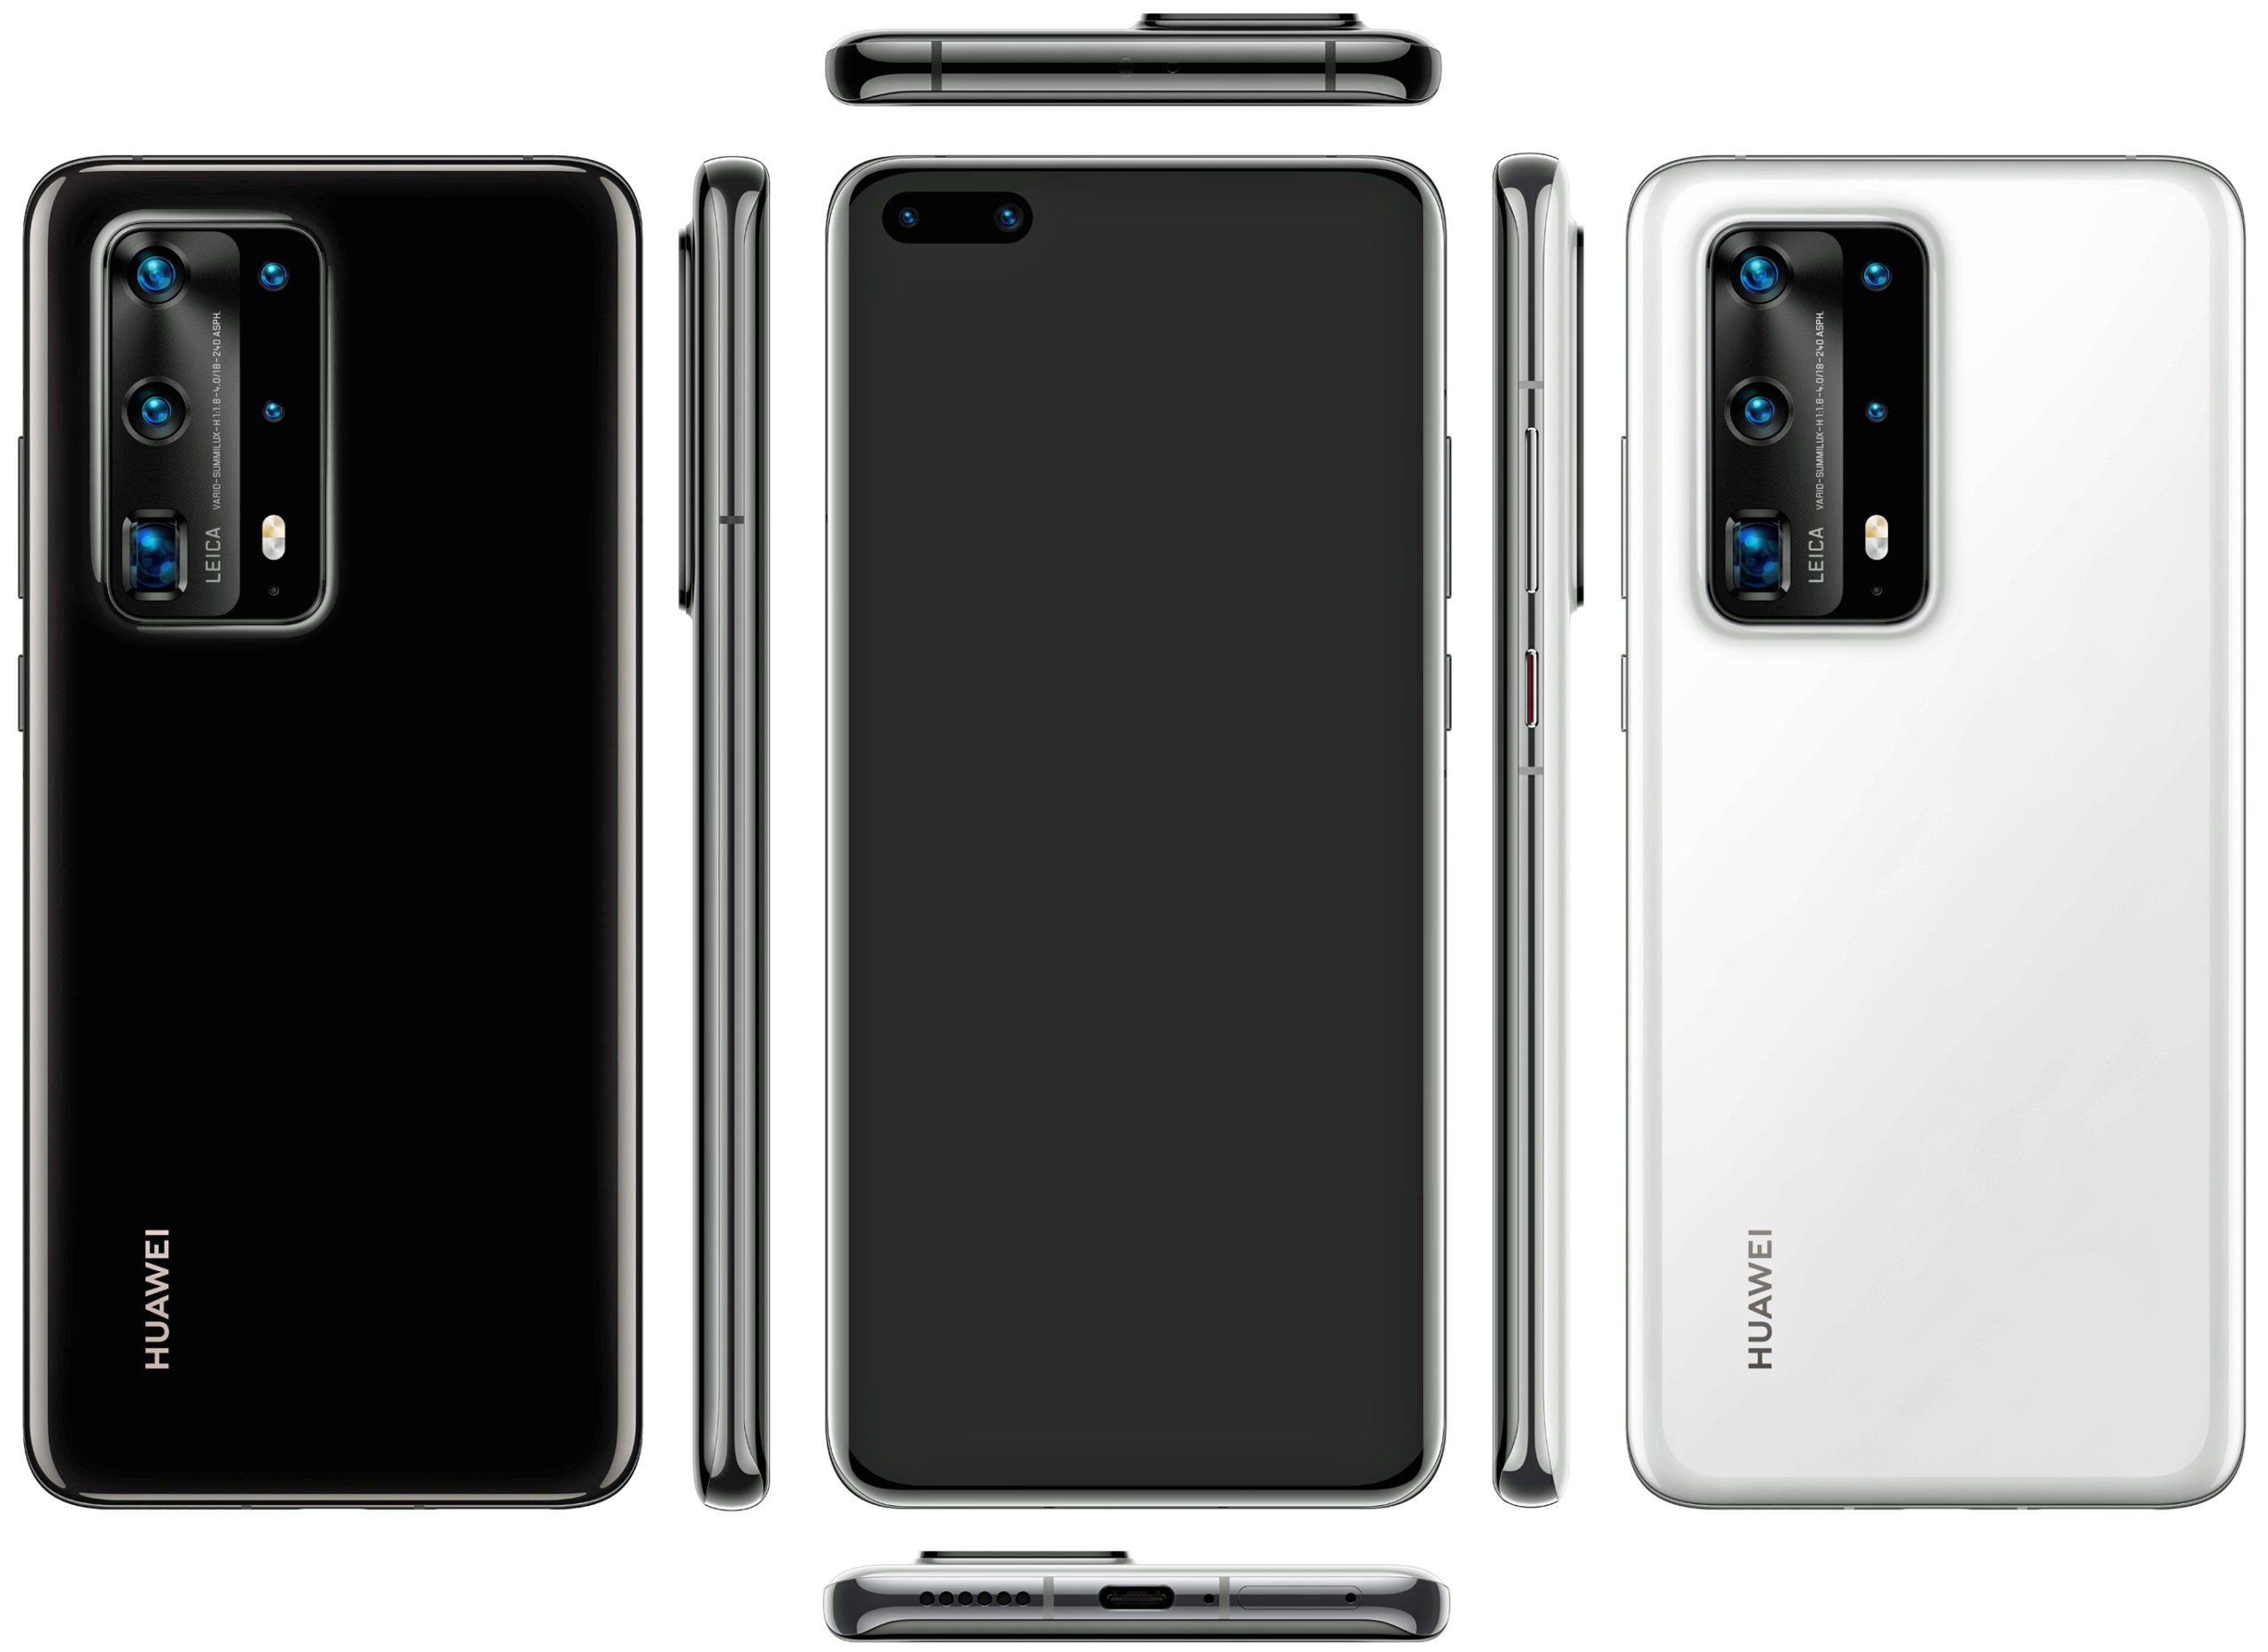 Présentation du smartphone Huawei P40 Pro Premium avec les principales fonctionnalités